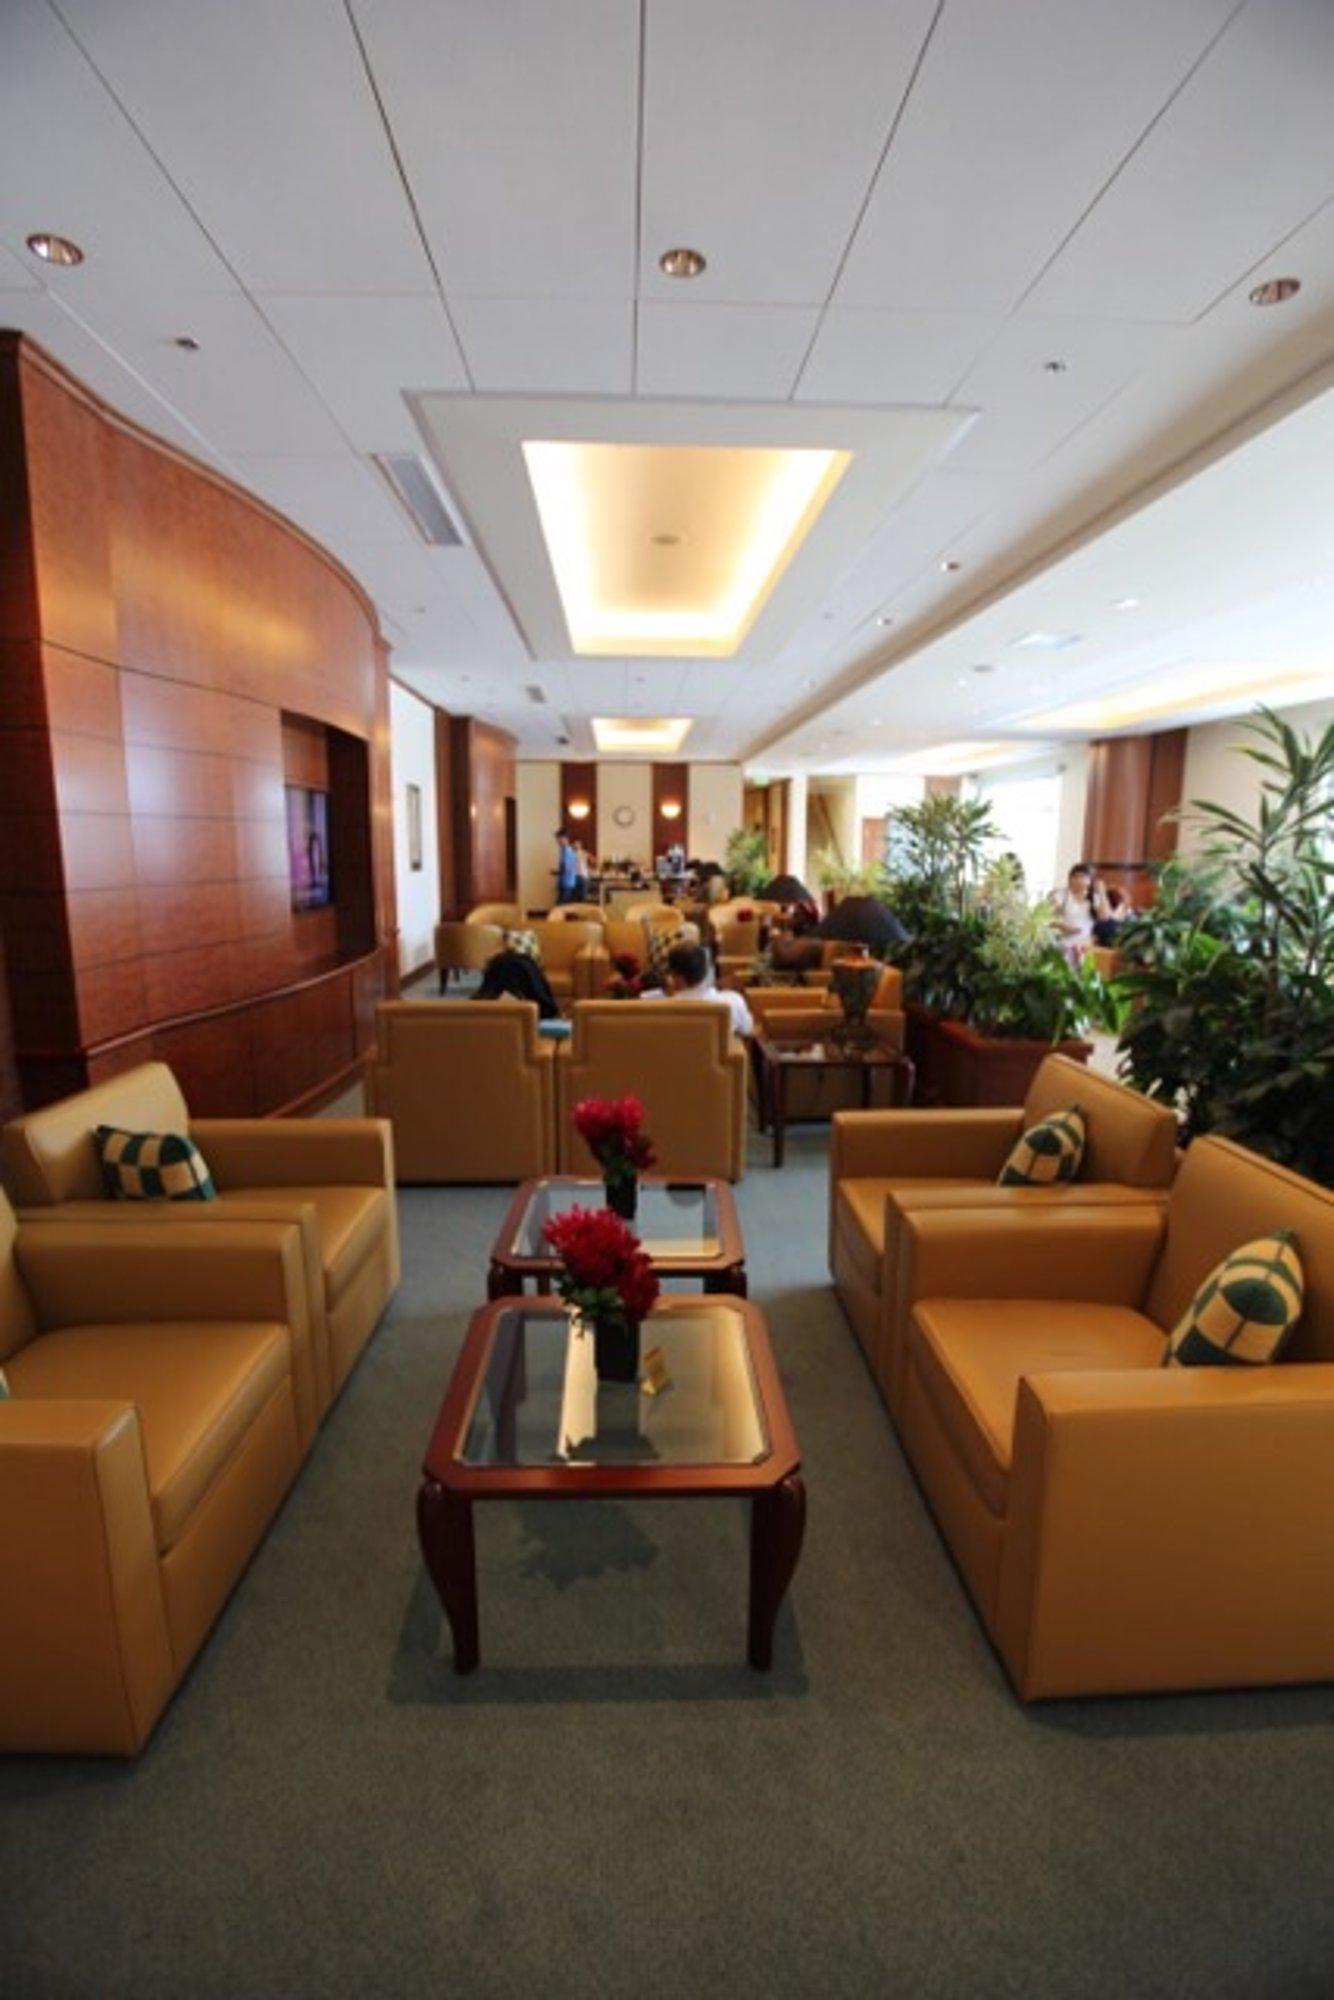 The Emirates Lounge image 19 of 28